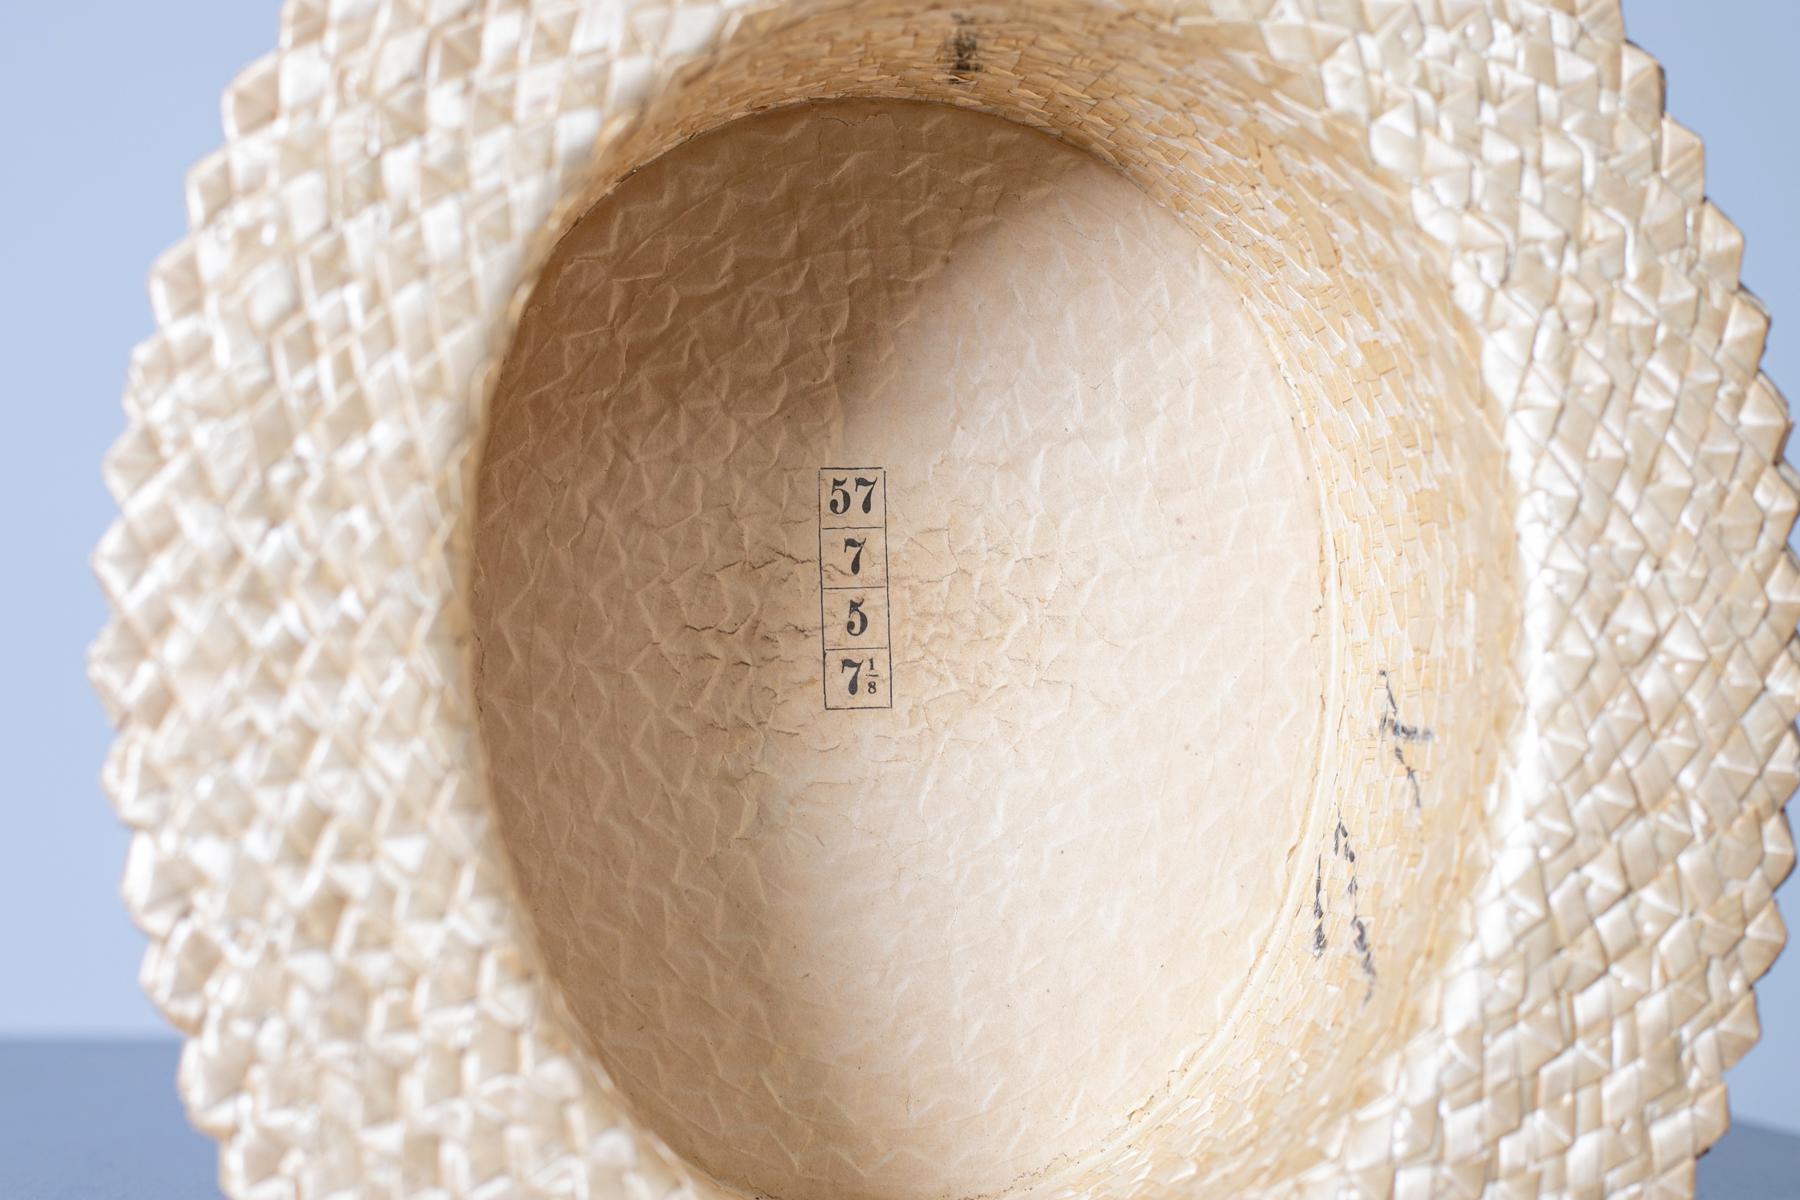 Magnifique chapeau de paille jaune des années 1990, de fabrication italienne.
Le chapeau est entièrement en paille, de forme carrée.
Le dôme est lisse, sans pincement ni élément décoratif.
À l'intérieur du dôme, le chapeau est doublé de tissu. La